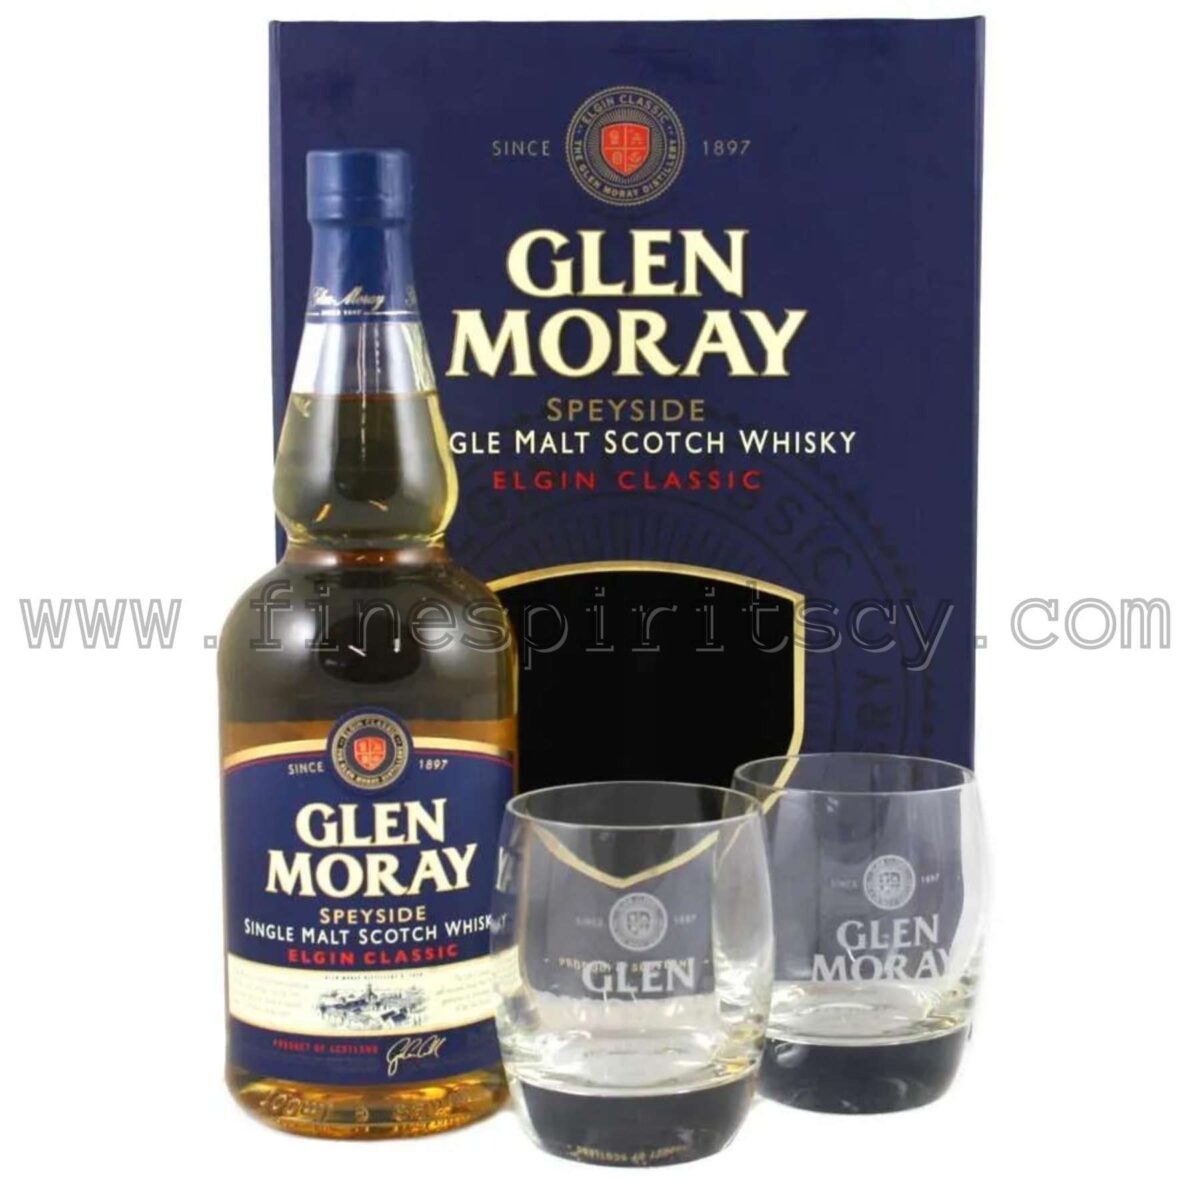 GlenMoray Gift Pack Cyprus Price Fine Spirits CY Whisky Whiskey Online